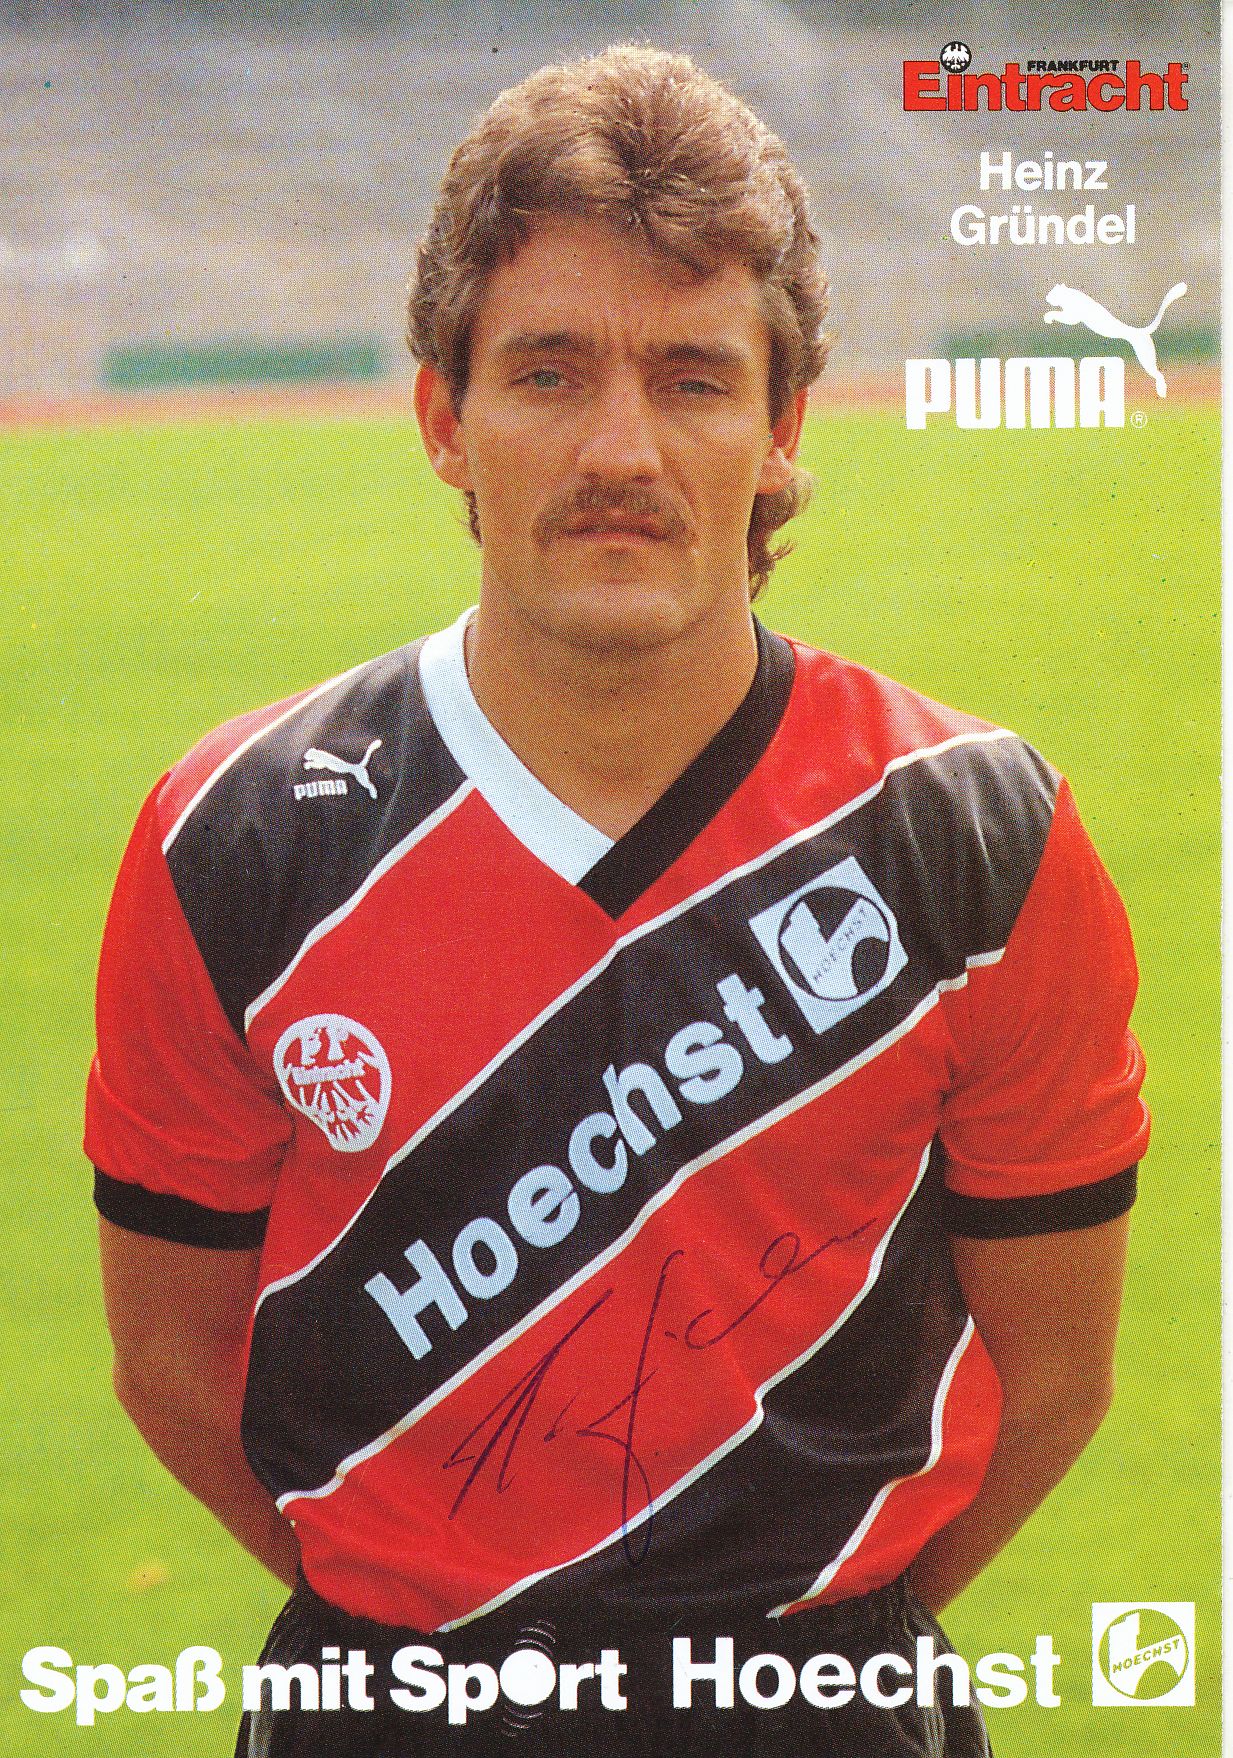 A 183190 Heinz Gründel Eintracht Frankfurt SC Panini Action Card 1992-93 